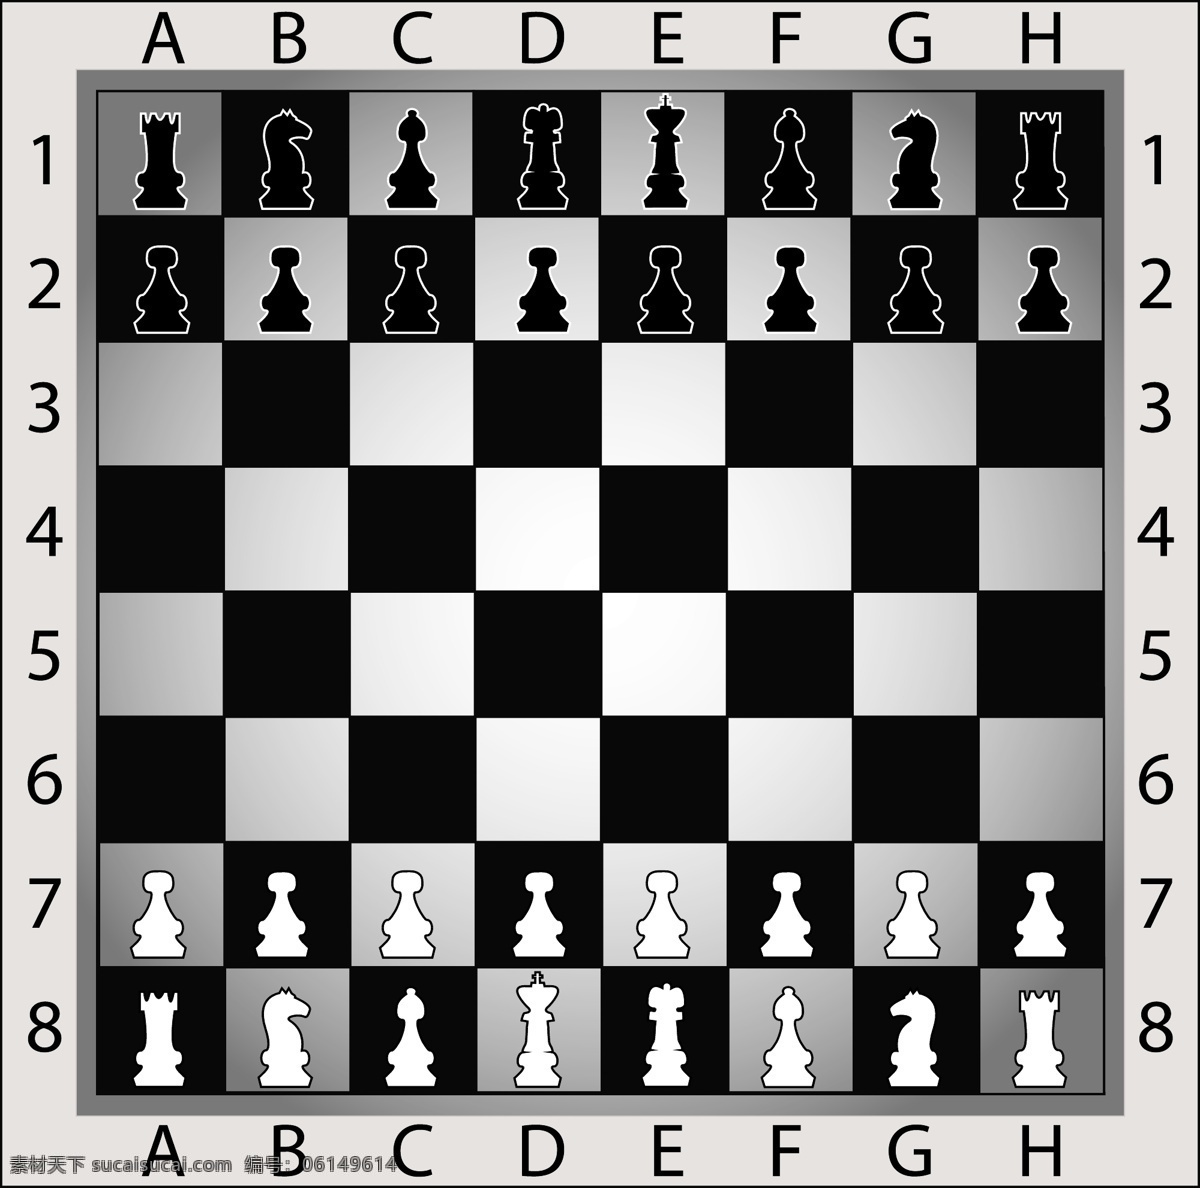 黑白 格子 棋盘 棋子 黑白棋盘 格子棋盘 国际象棋 象棋 生活百科 矢量素材 黑色